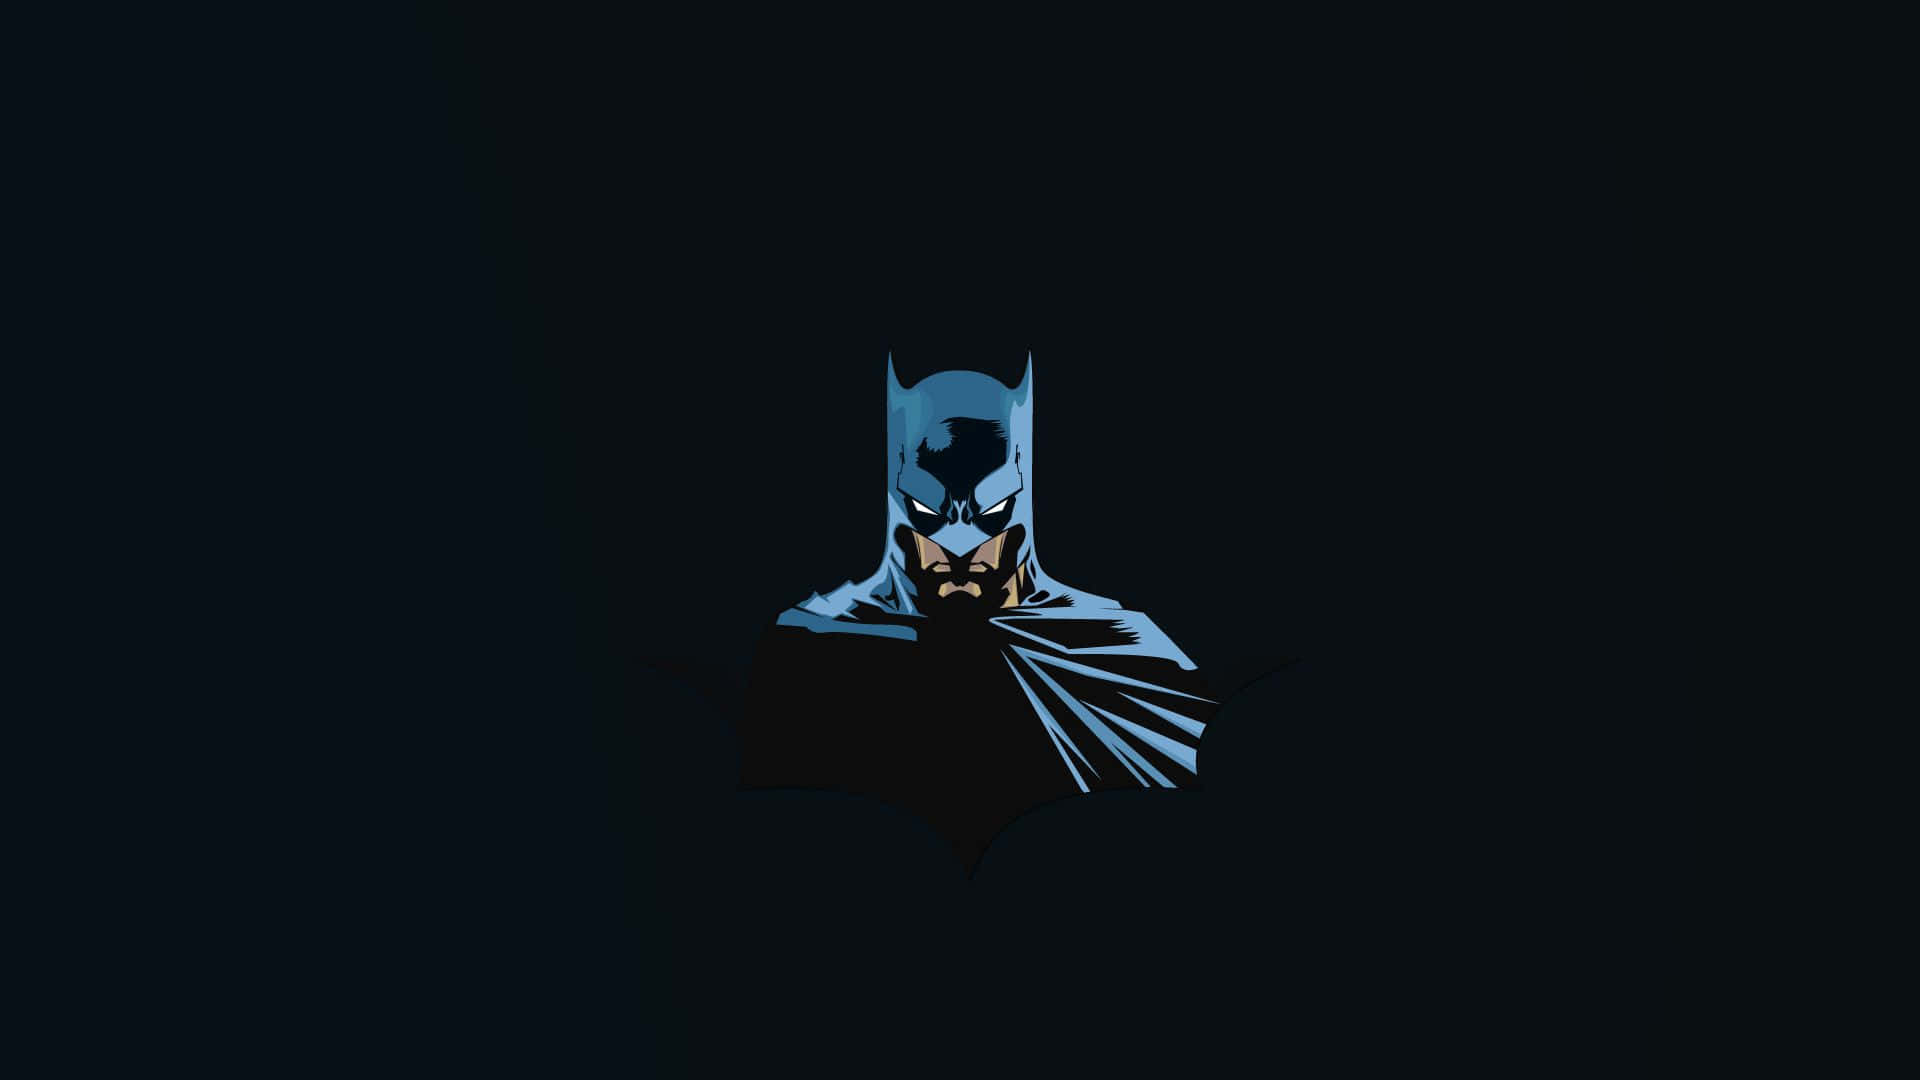 Laptopmit Batman-motiv. Wallpaper